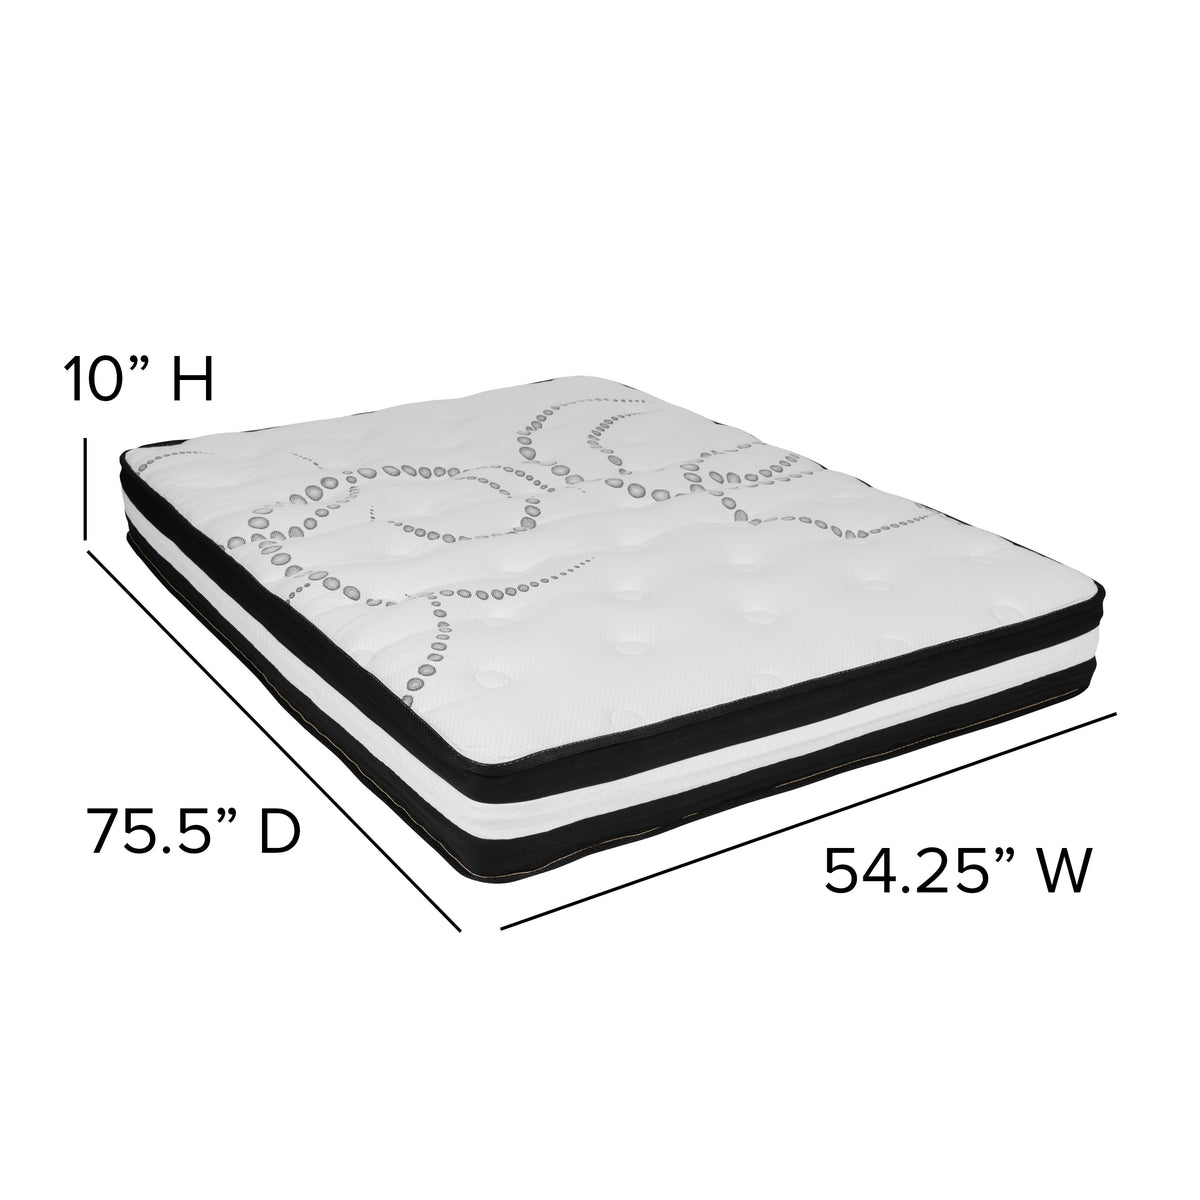 Full |#| Full 10inch Mattress & Gel 3inch Memory Foam Topper Bundle Set